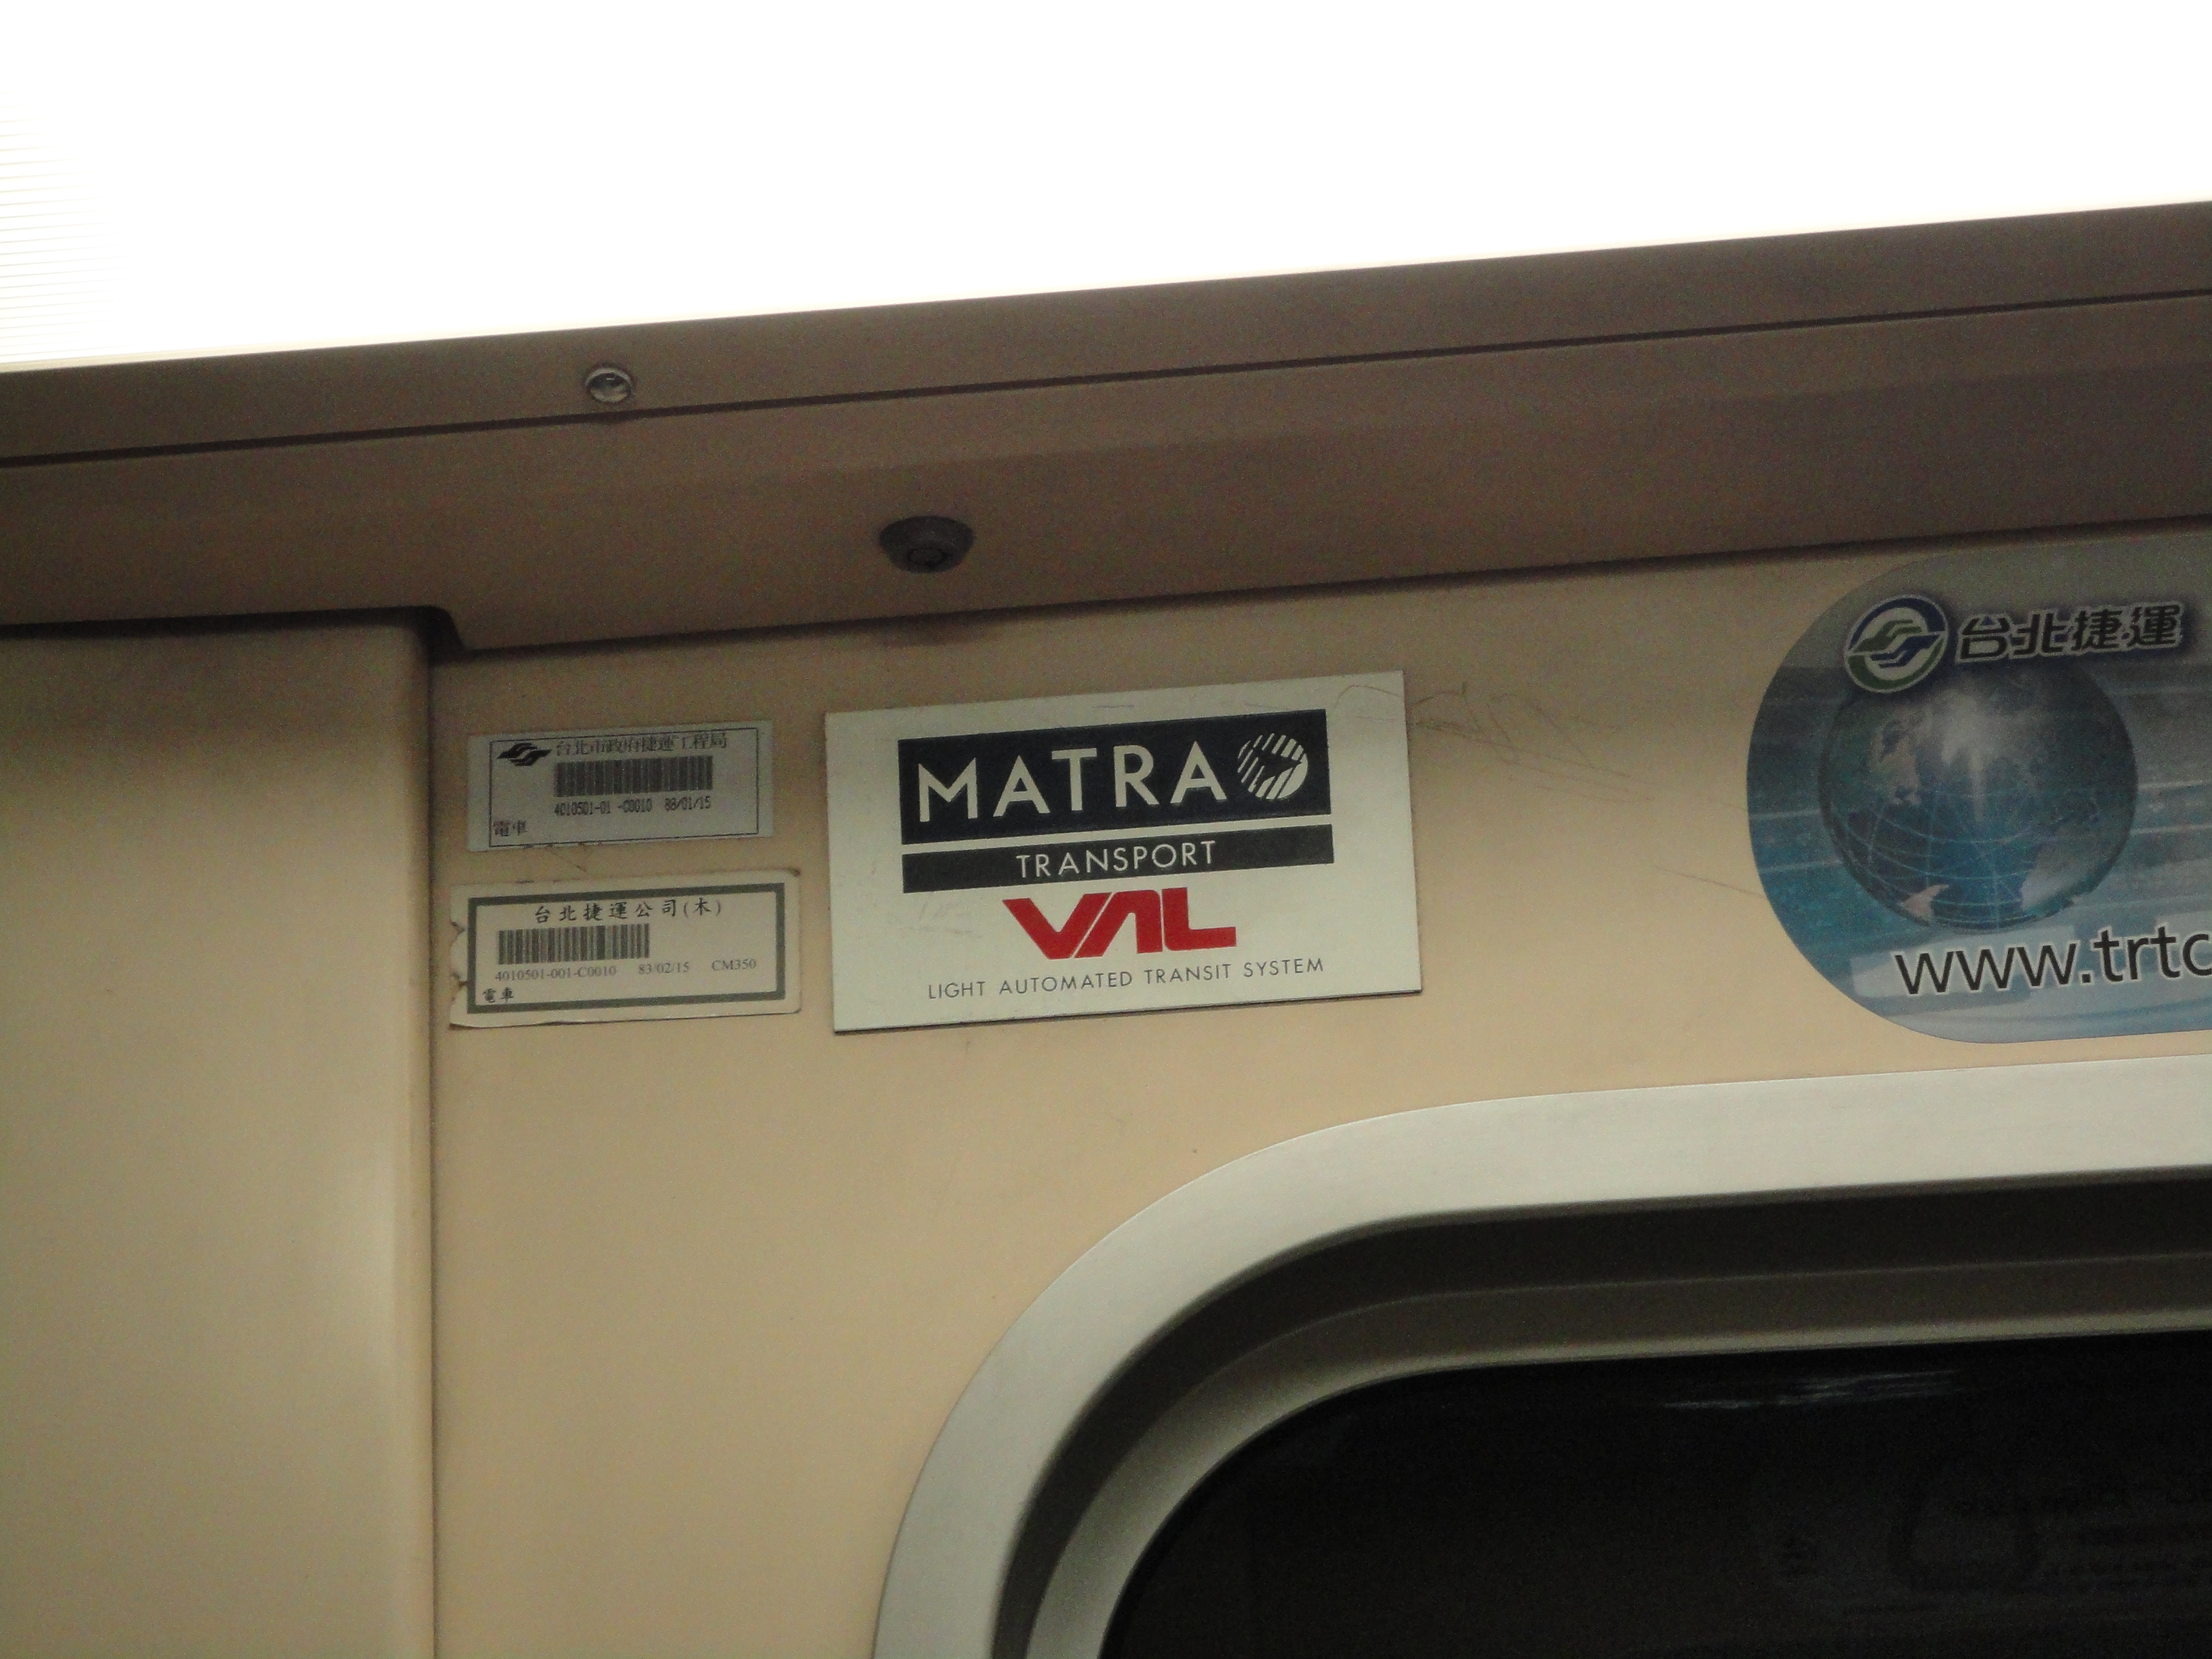 馬特拉列車的銘牌